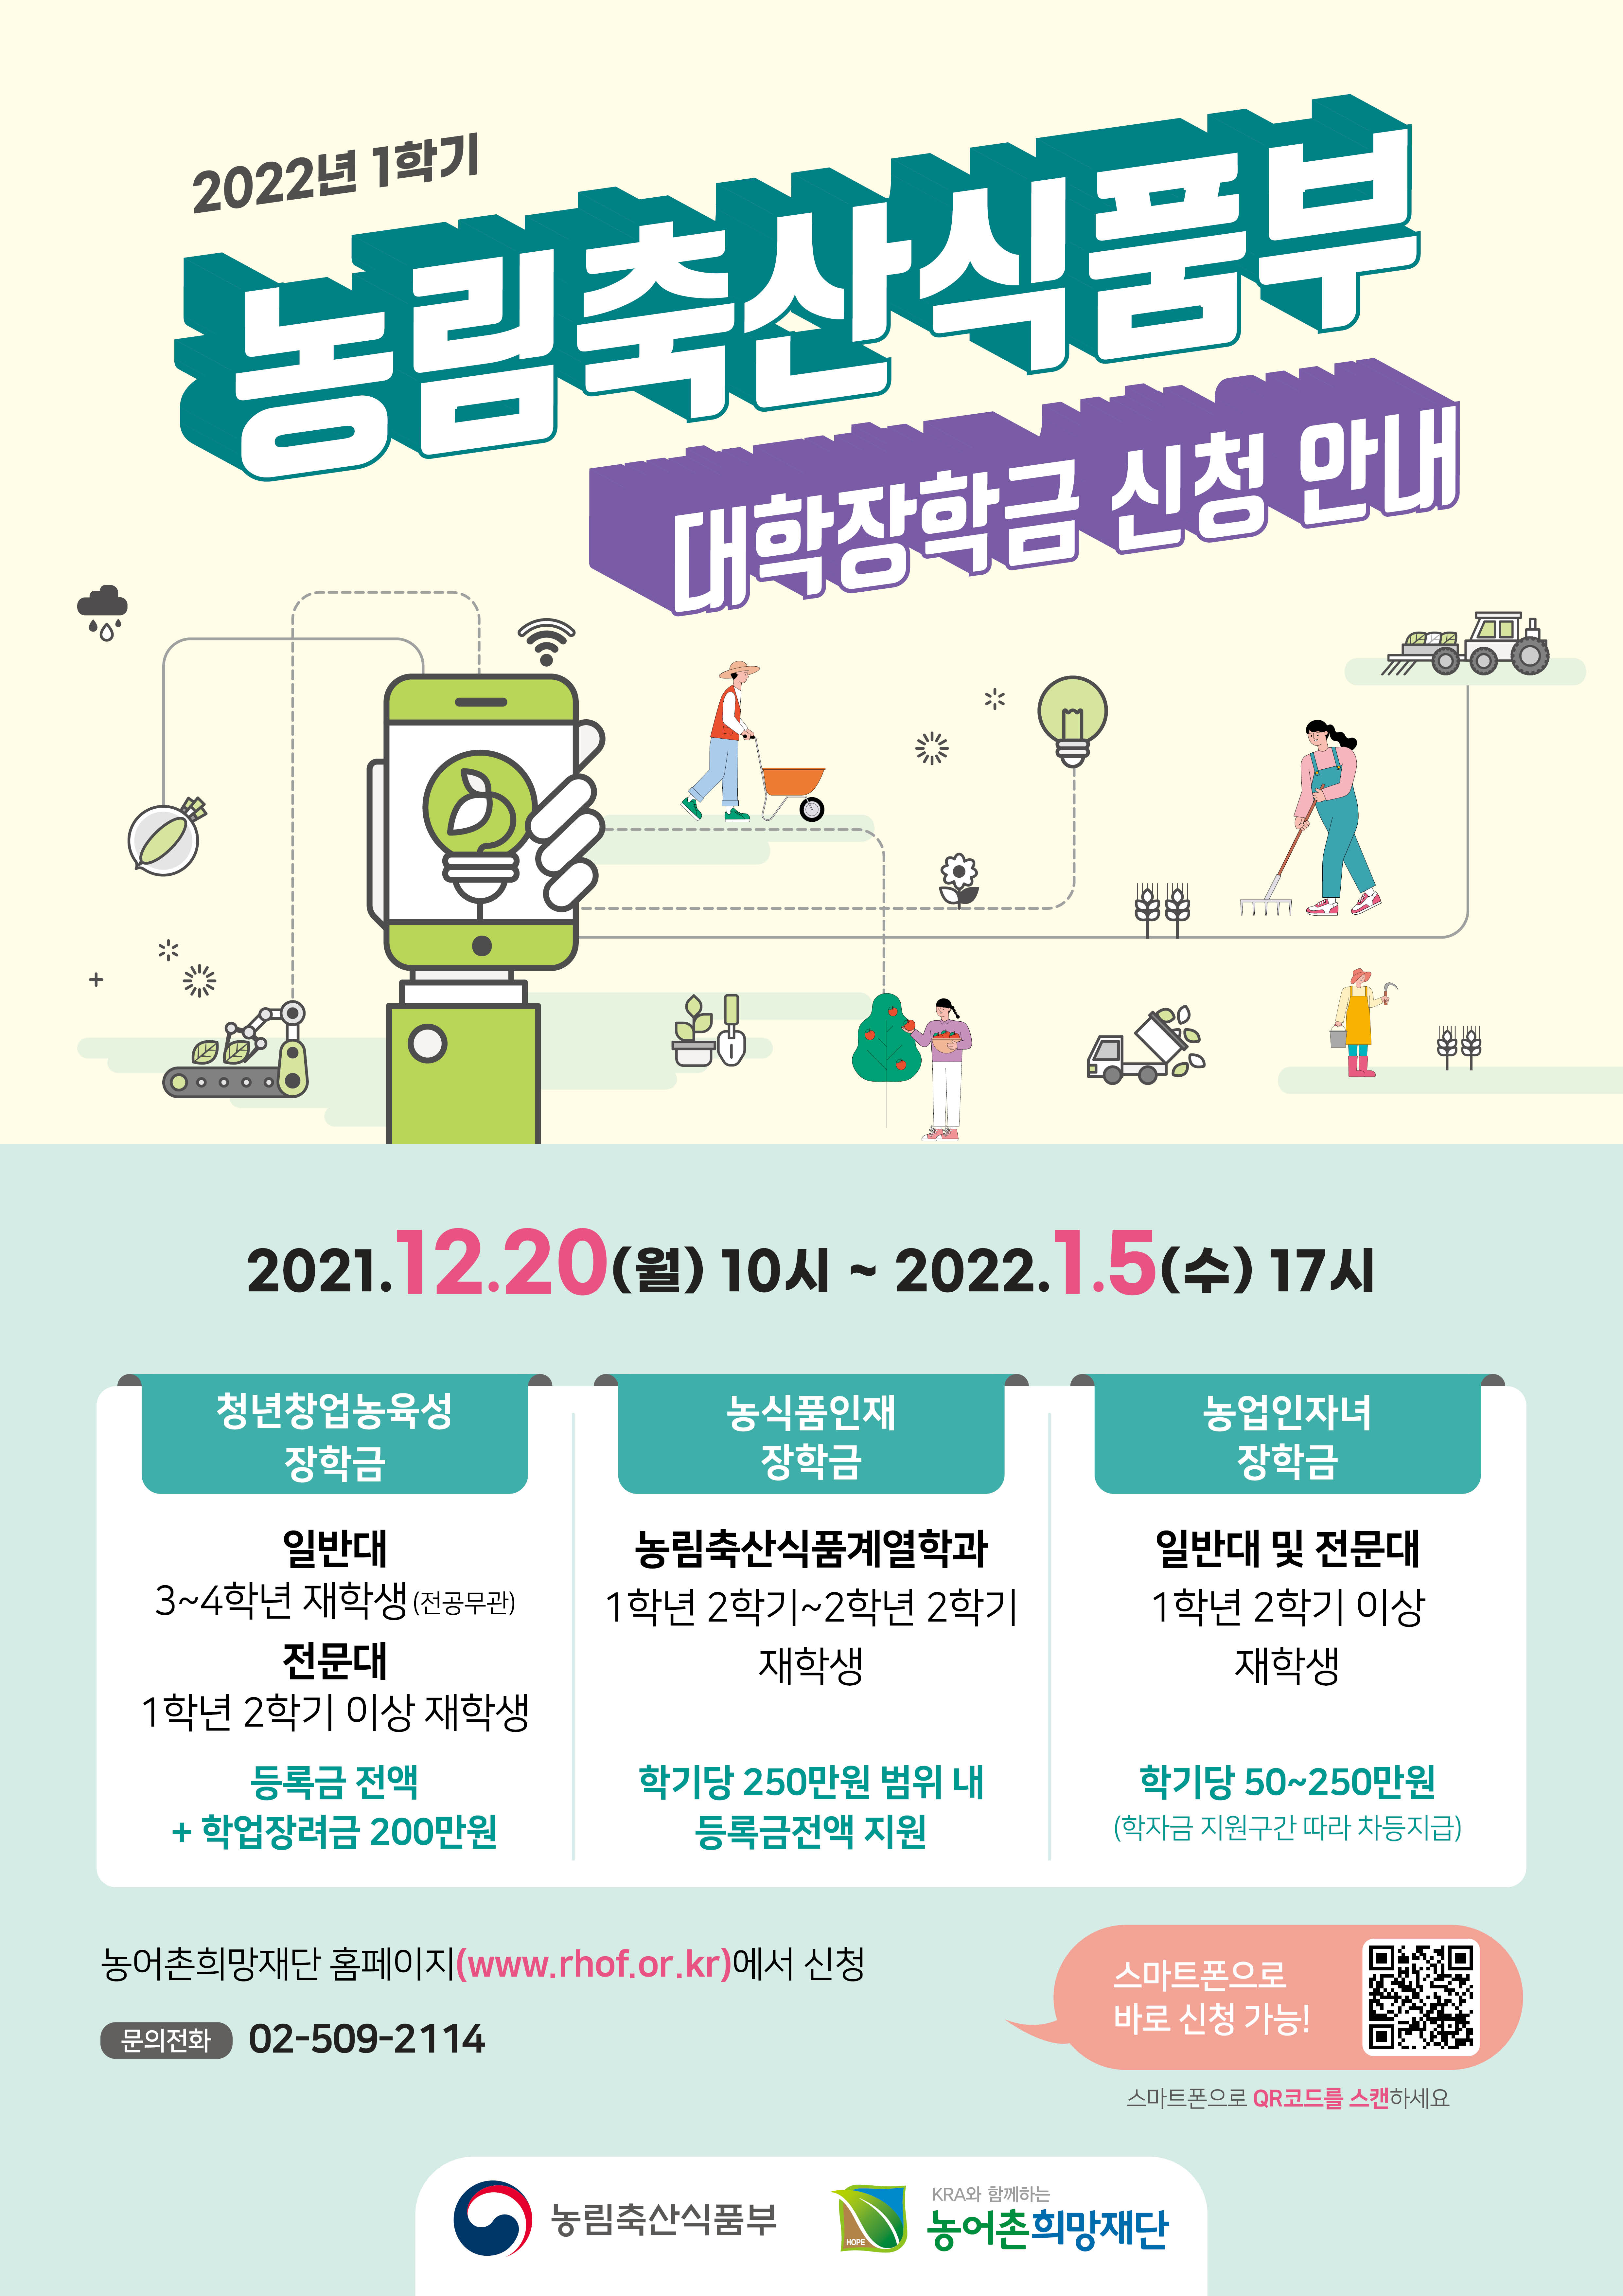 2022-1 농림축산식품부 장학금 안내(청년창업농육성, 농업인자녀장학금)